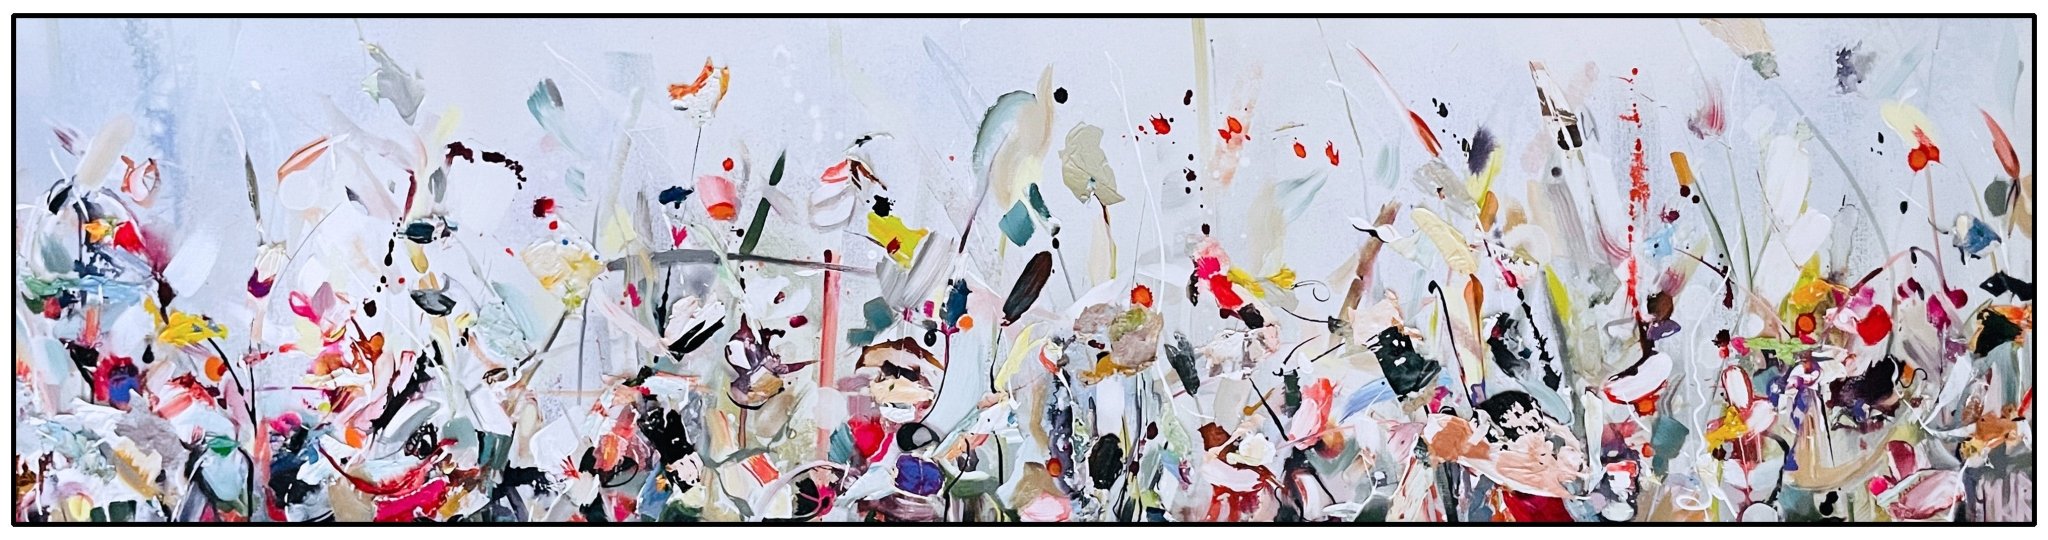 Frisse bloei (50 x200cm) - ArtFusion.nl